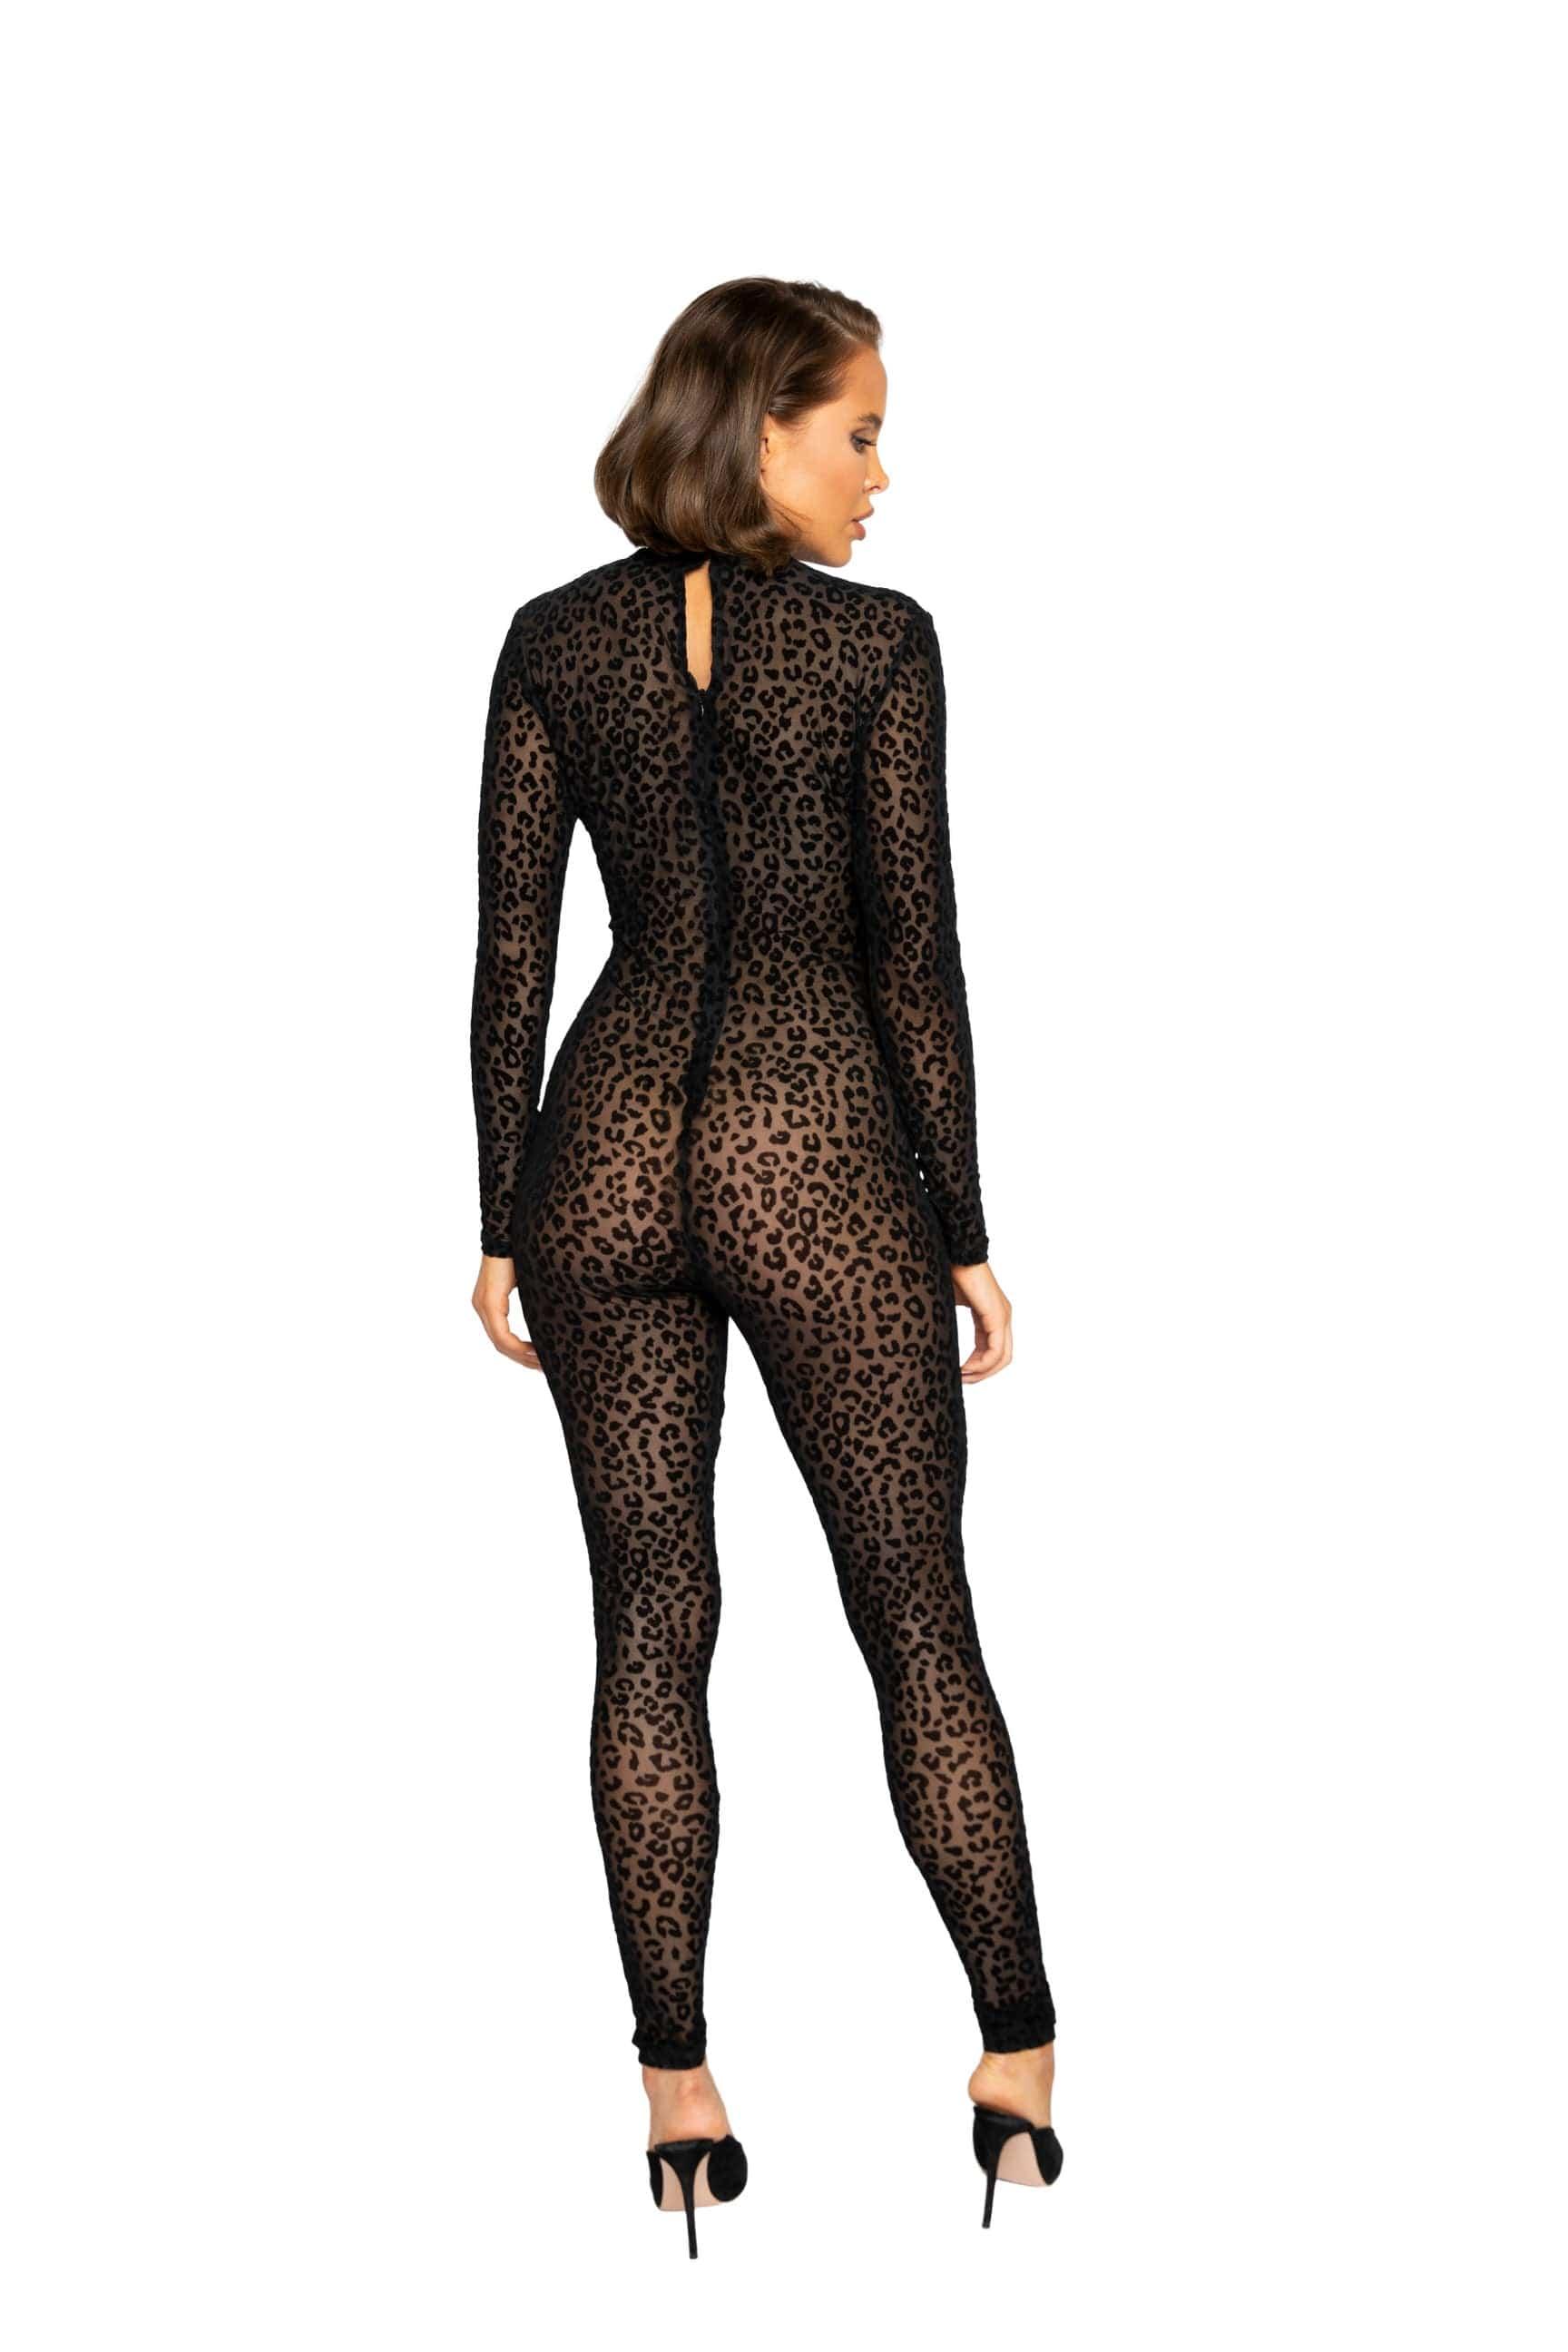 Roma Confidential Bodysuits Small / Black Velvet Leopard Bodysuit